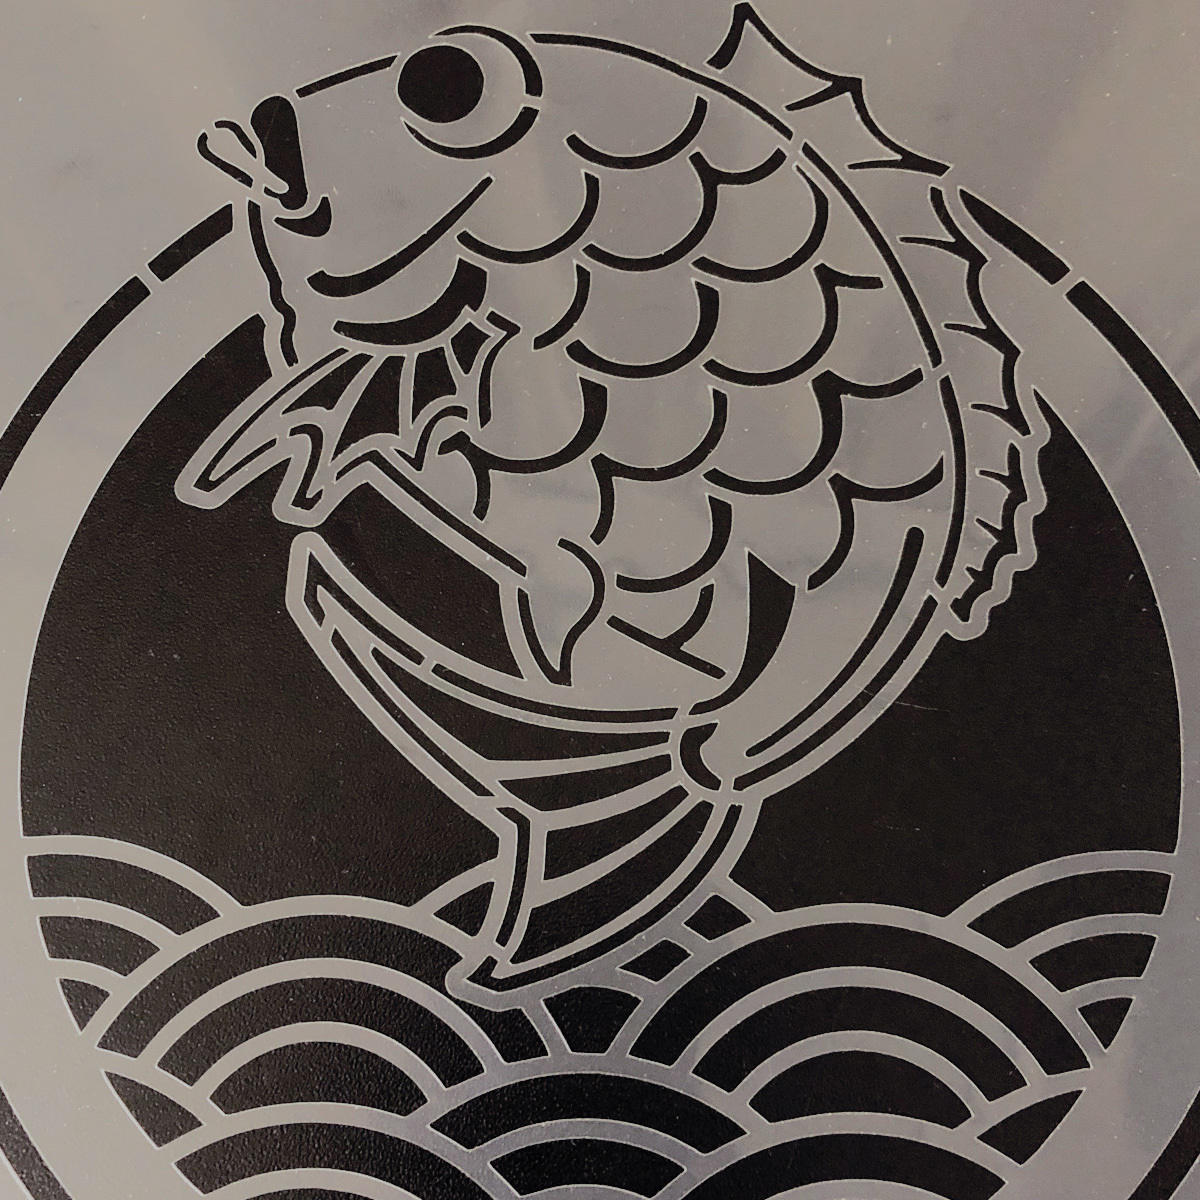 * морской лещ . синий море волна японский стиль иллюстрации stencil сиденье выкройки дизайн NO801